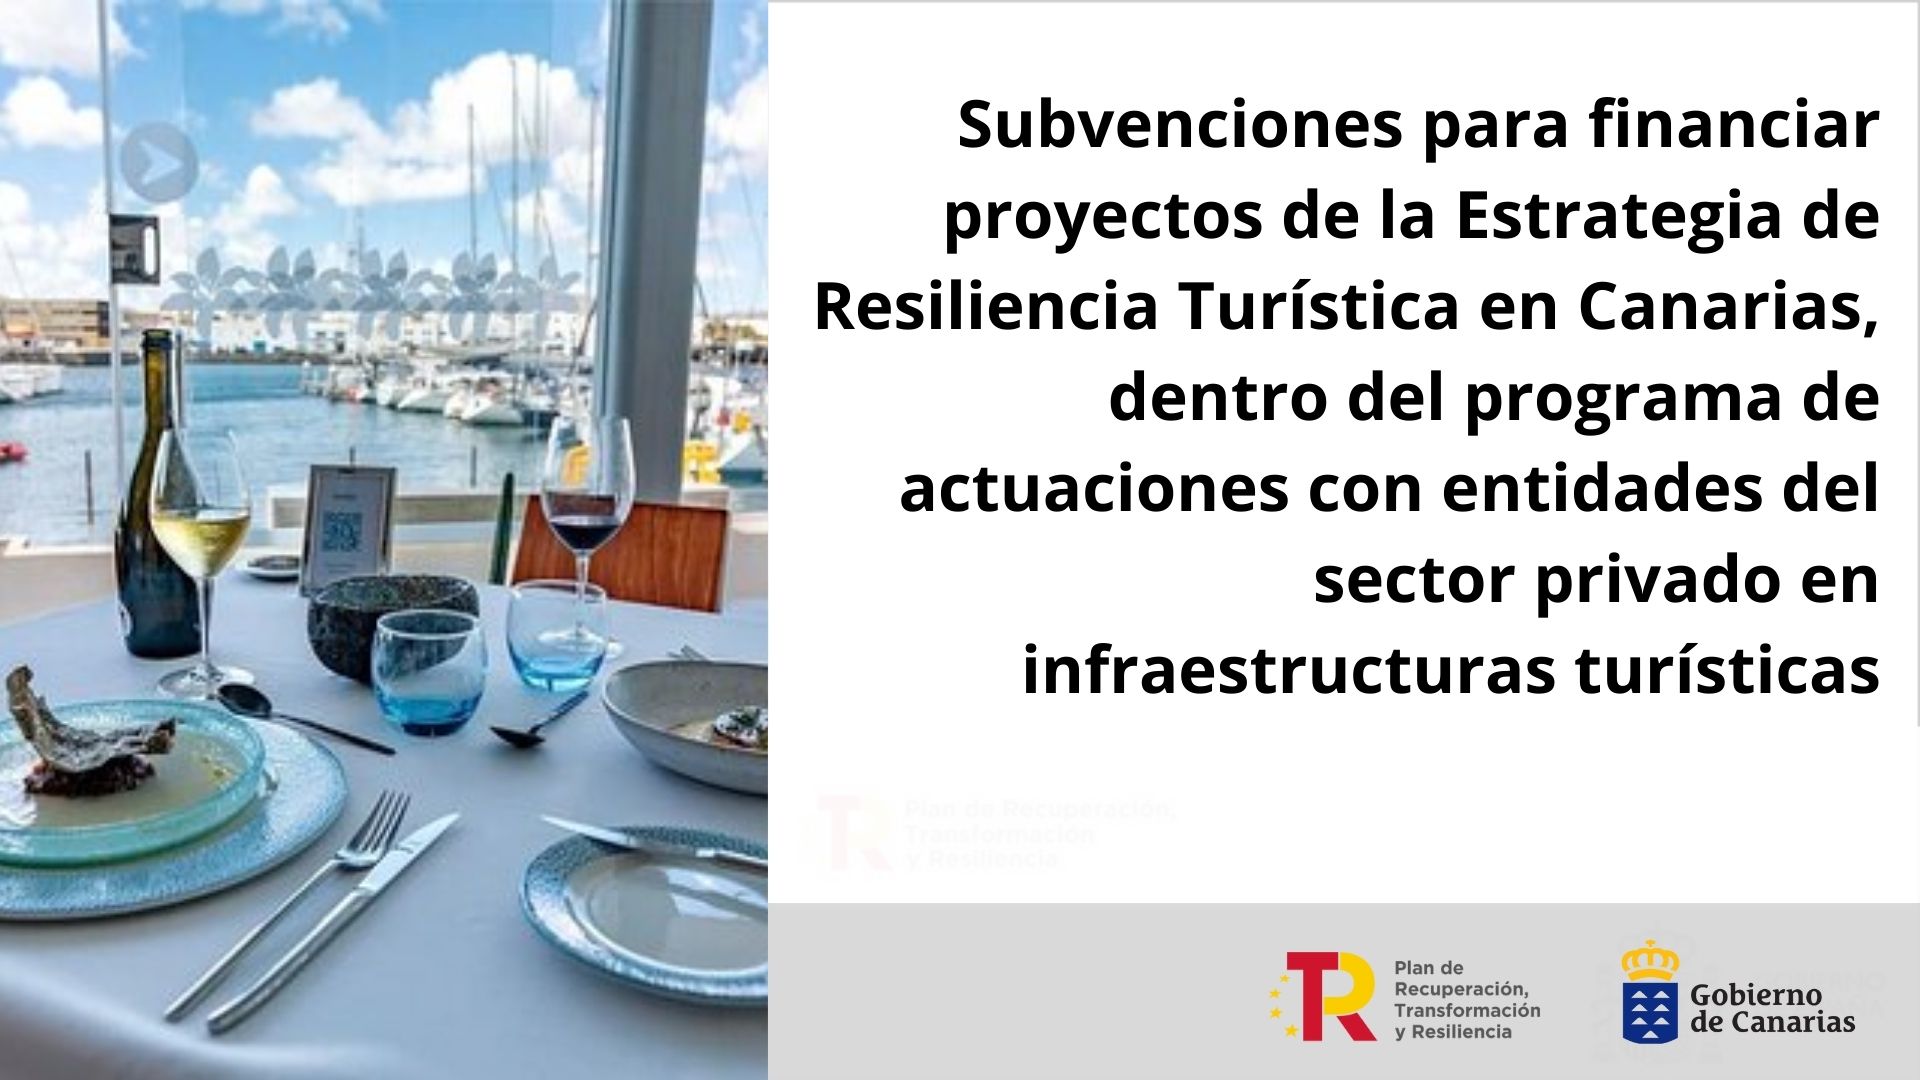 Subvenciones destinadas a financiar proyectos de estrategia de resiliencia turística en Canarias dentro del Programa de actuaciones con entidades del sector privado en infraestructuras turísticas | 100% subvencionable